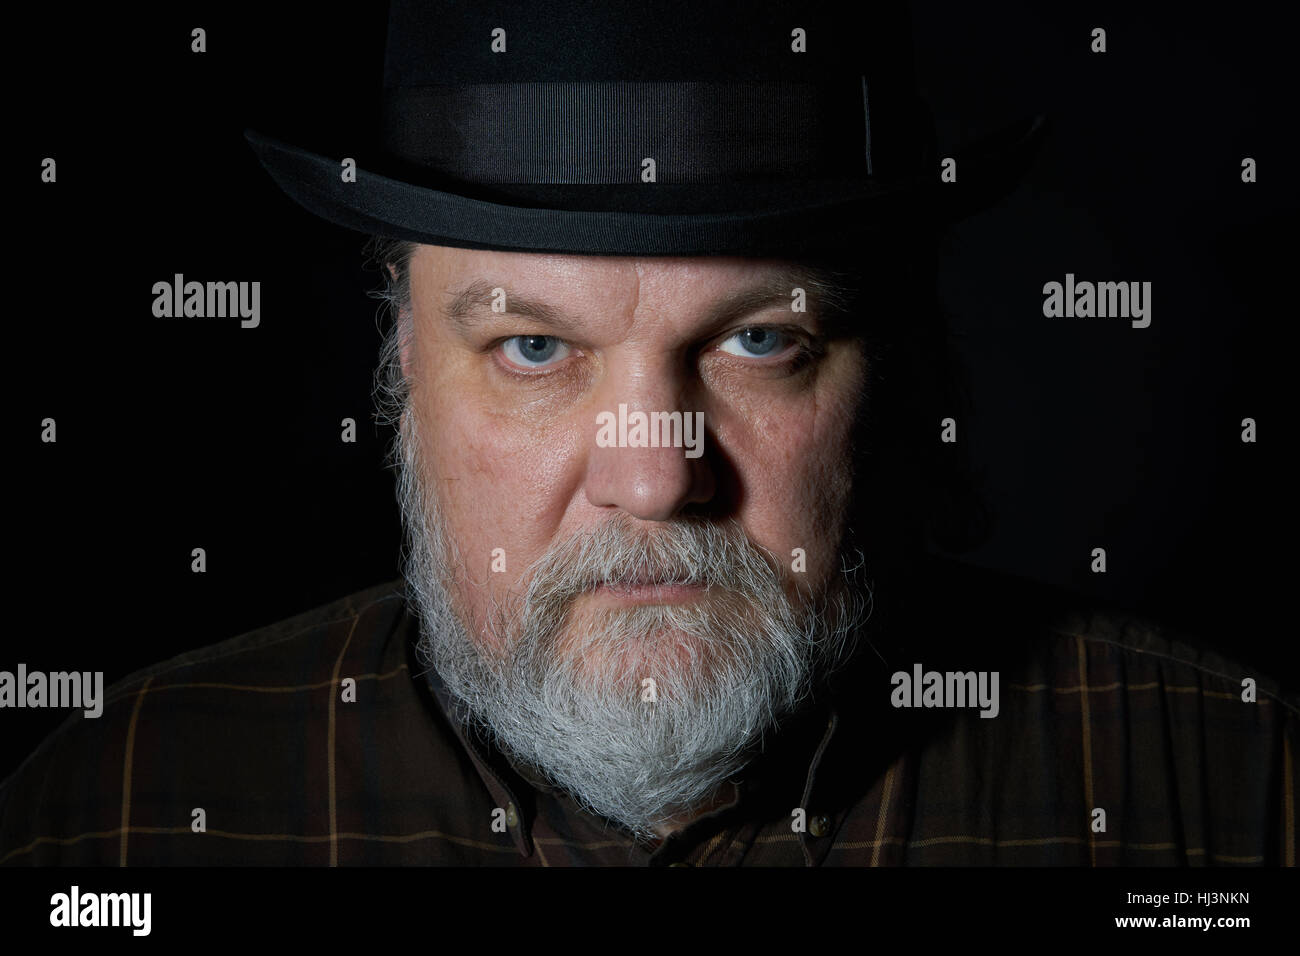 Ritratto di uomo con barba grigia nel cappello nero su sfondo nero Foto Stock